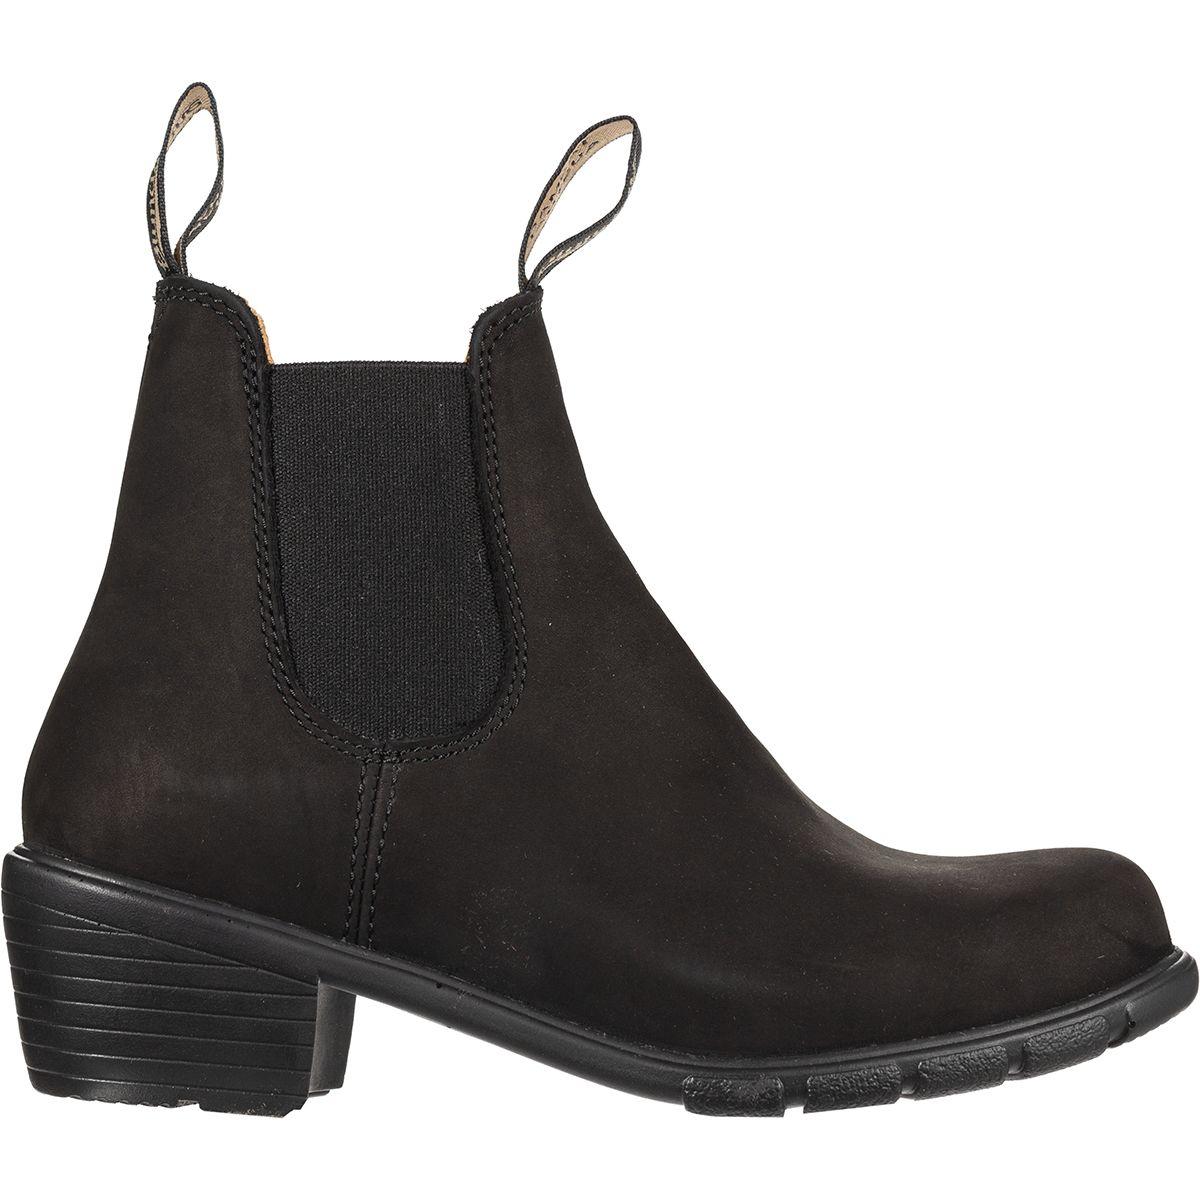 Blundstone Leather 500 Series Original Heel Boot in Black Nubuck (Black ...